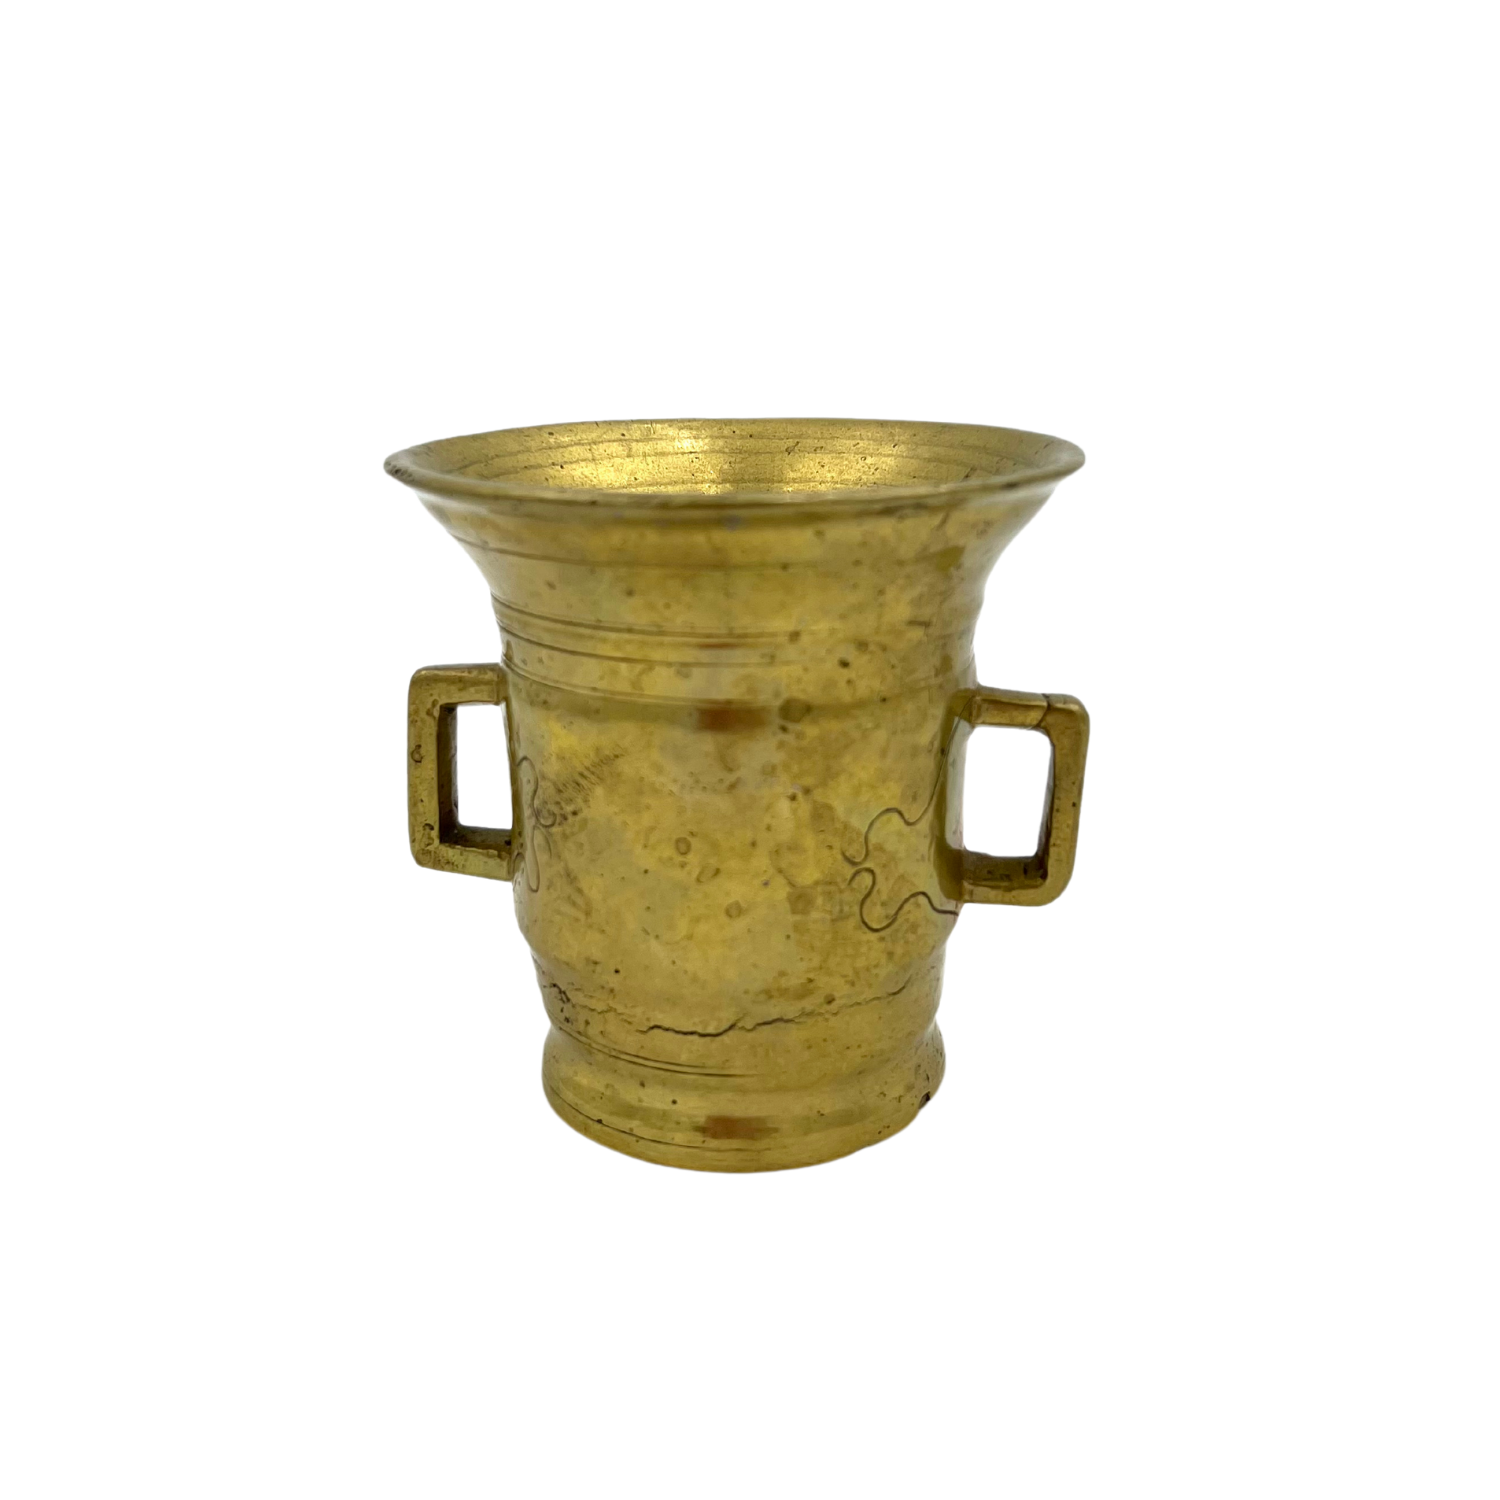 Antique Brass Apothecary Mortar & Pestle - 18th Century